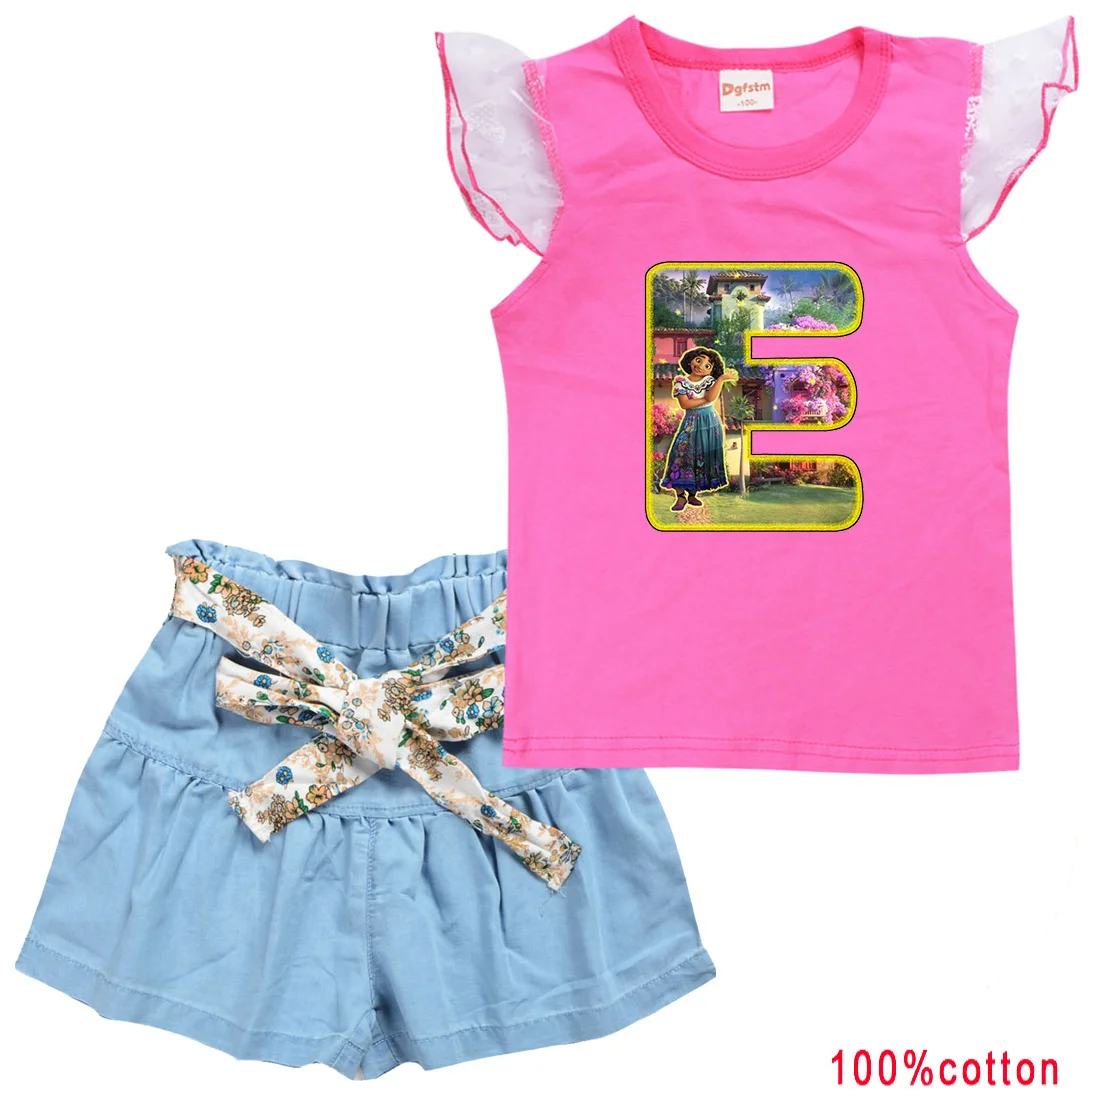 2 шт./компл. Повседневные спортивные костюмы Disney Encanto для девочек, комплекты детской одежды, летняя футболка, шорты